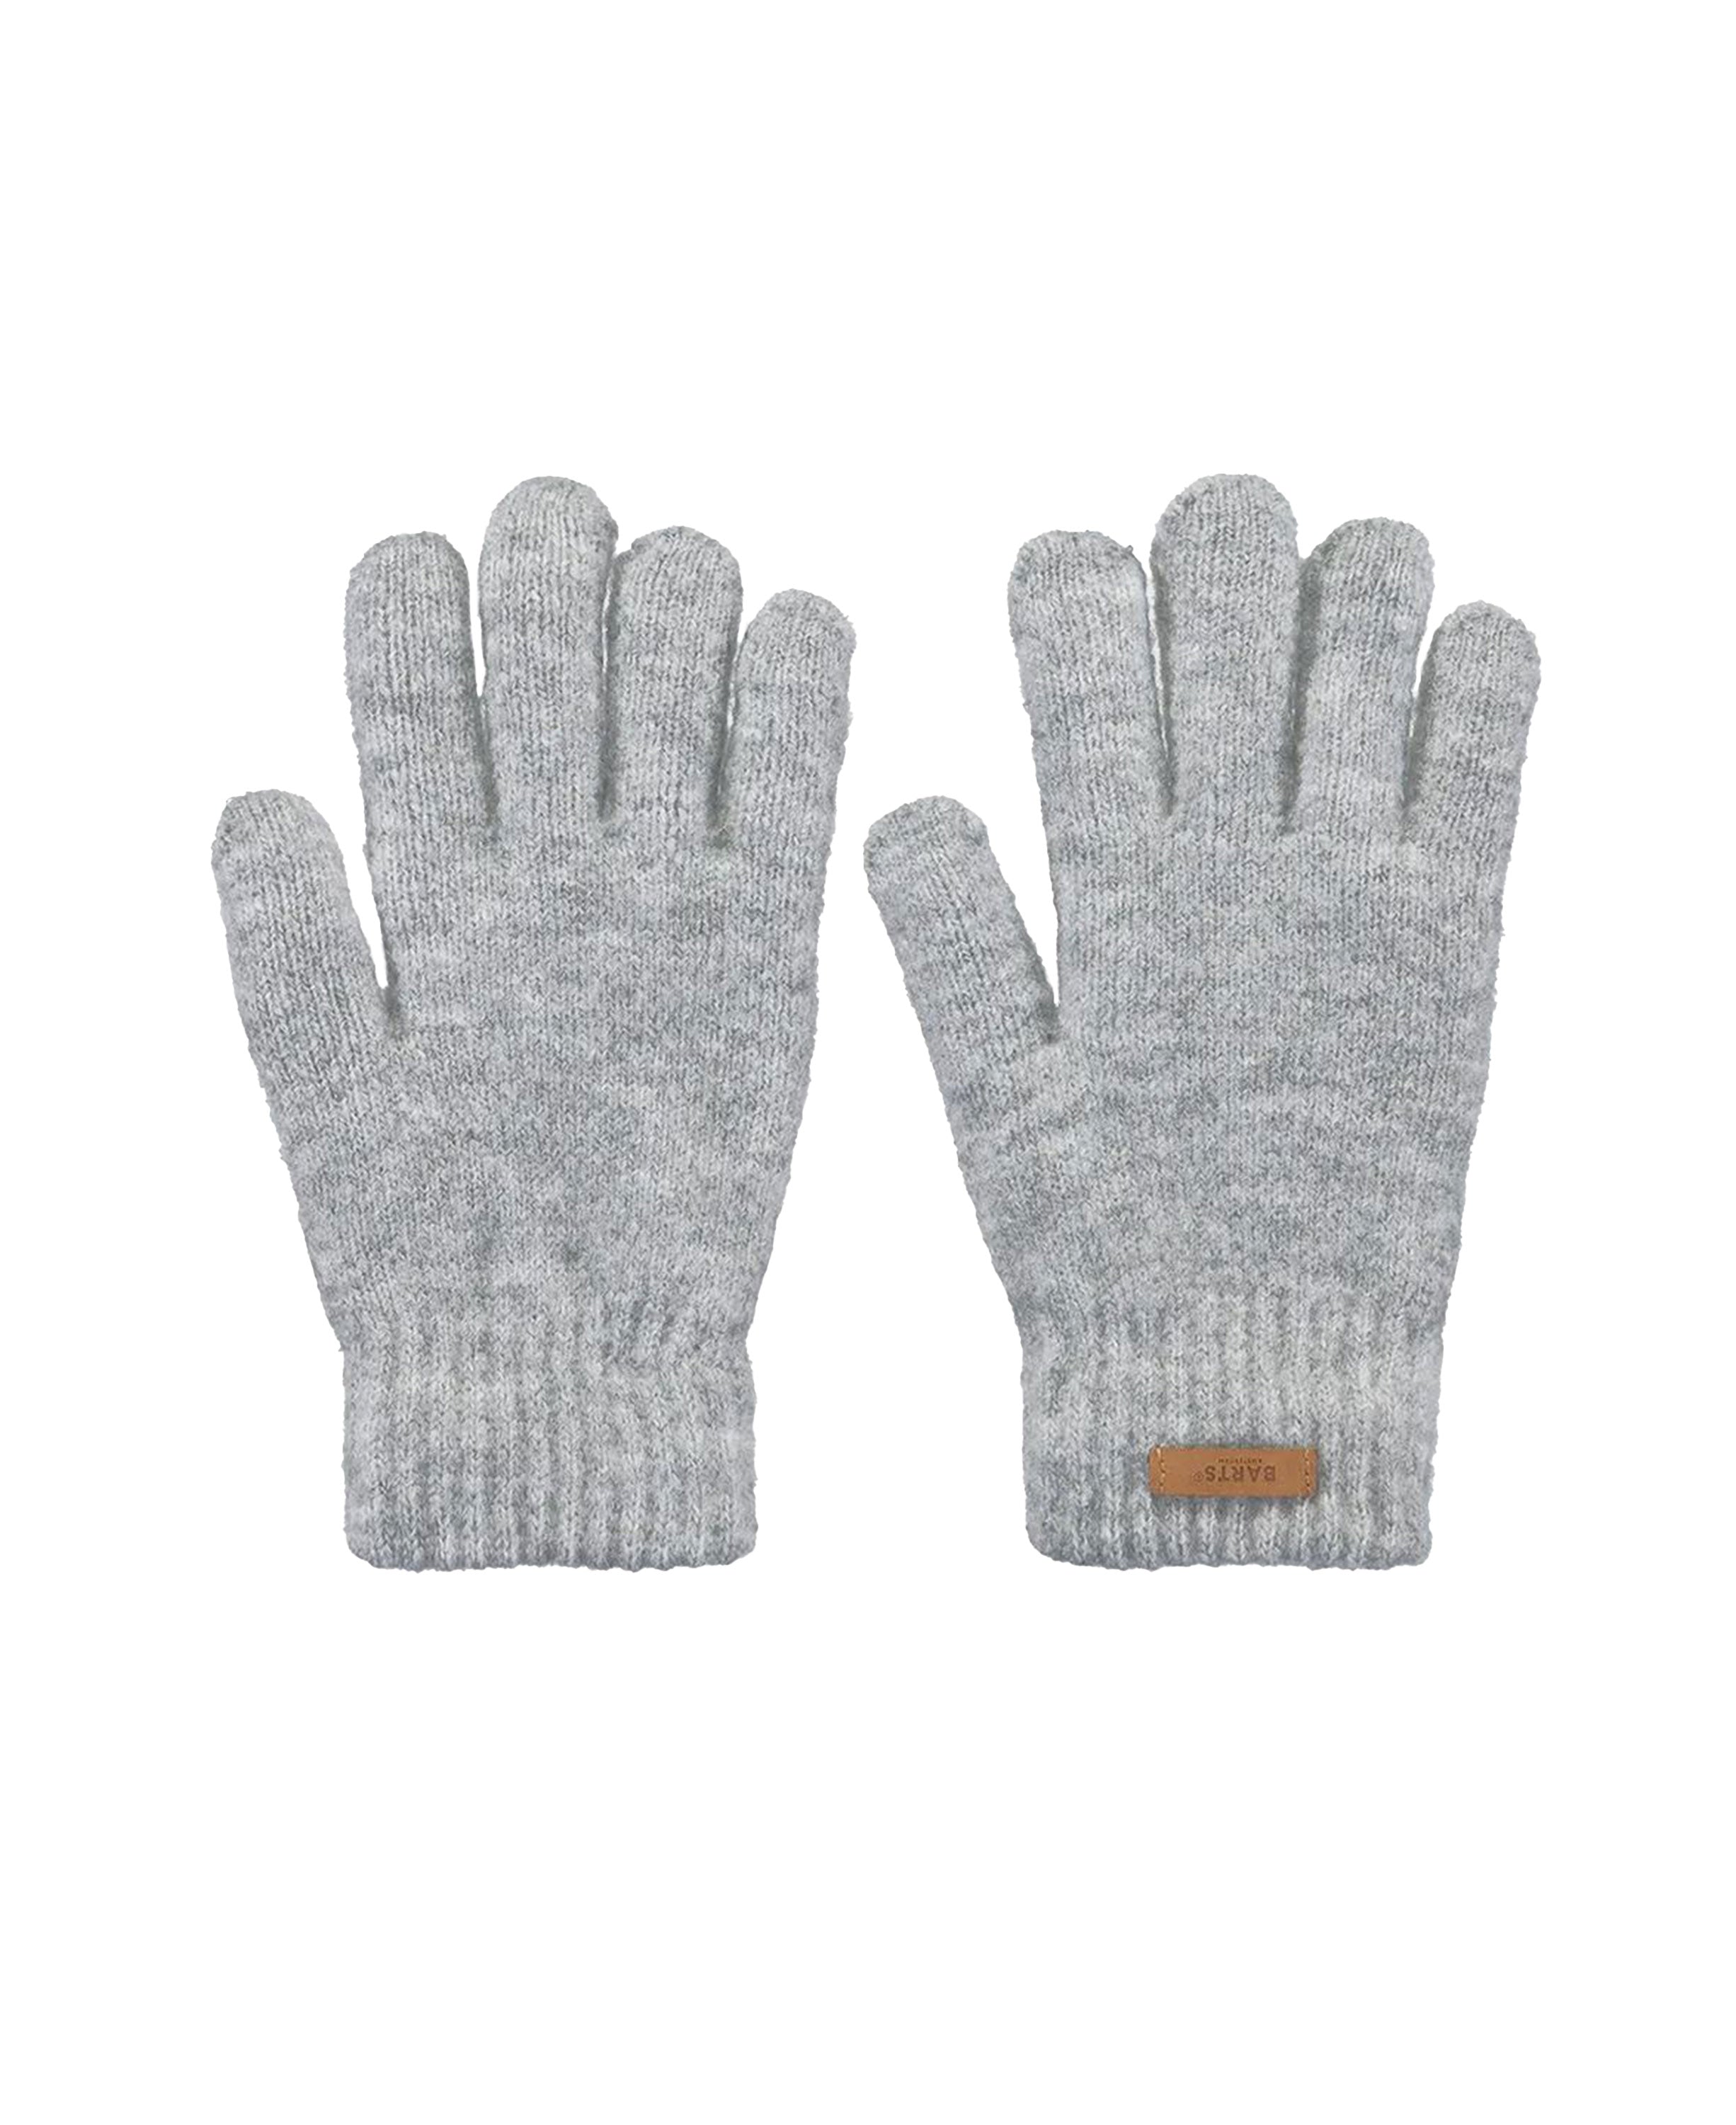 Witzia Gloves - Grey